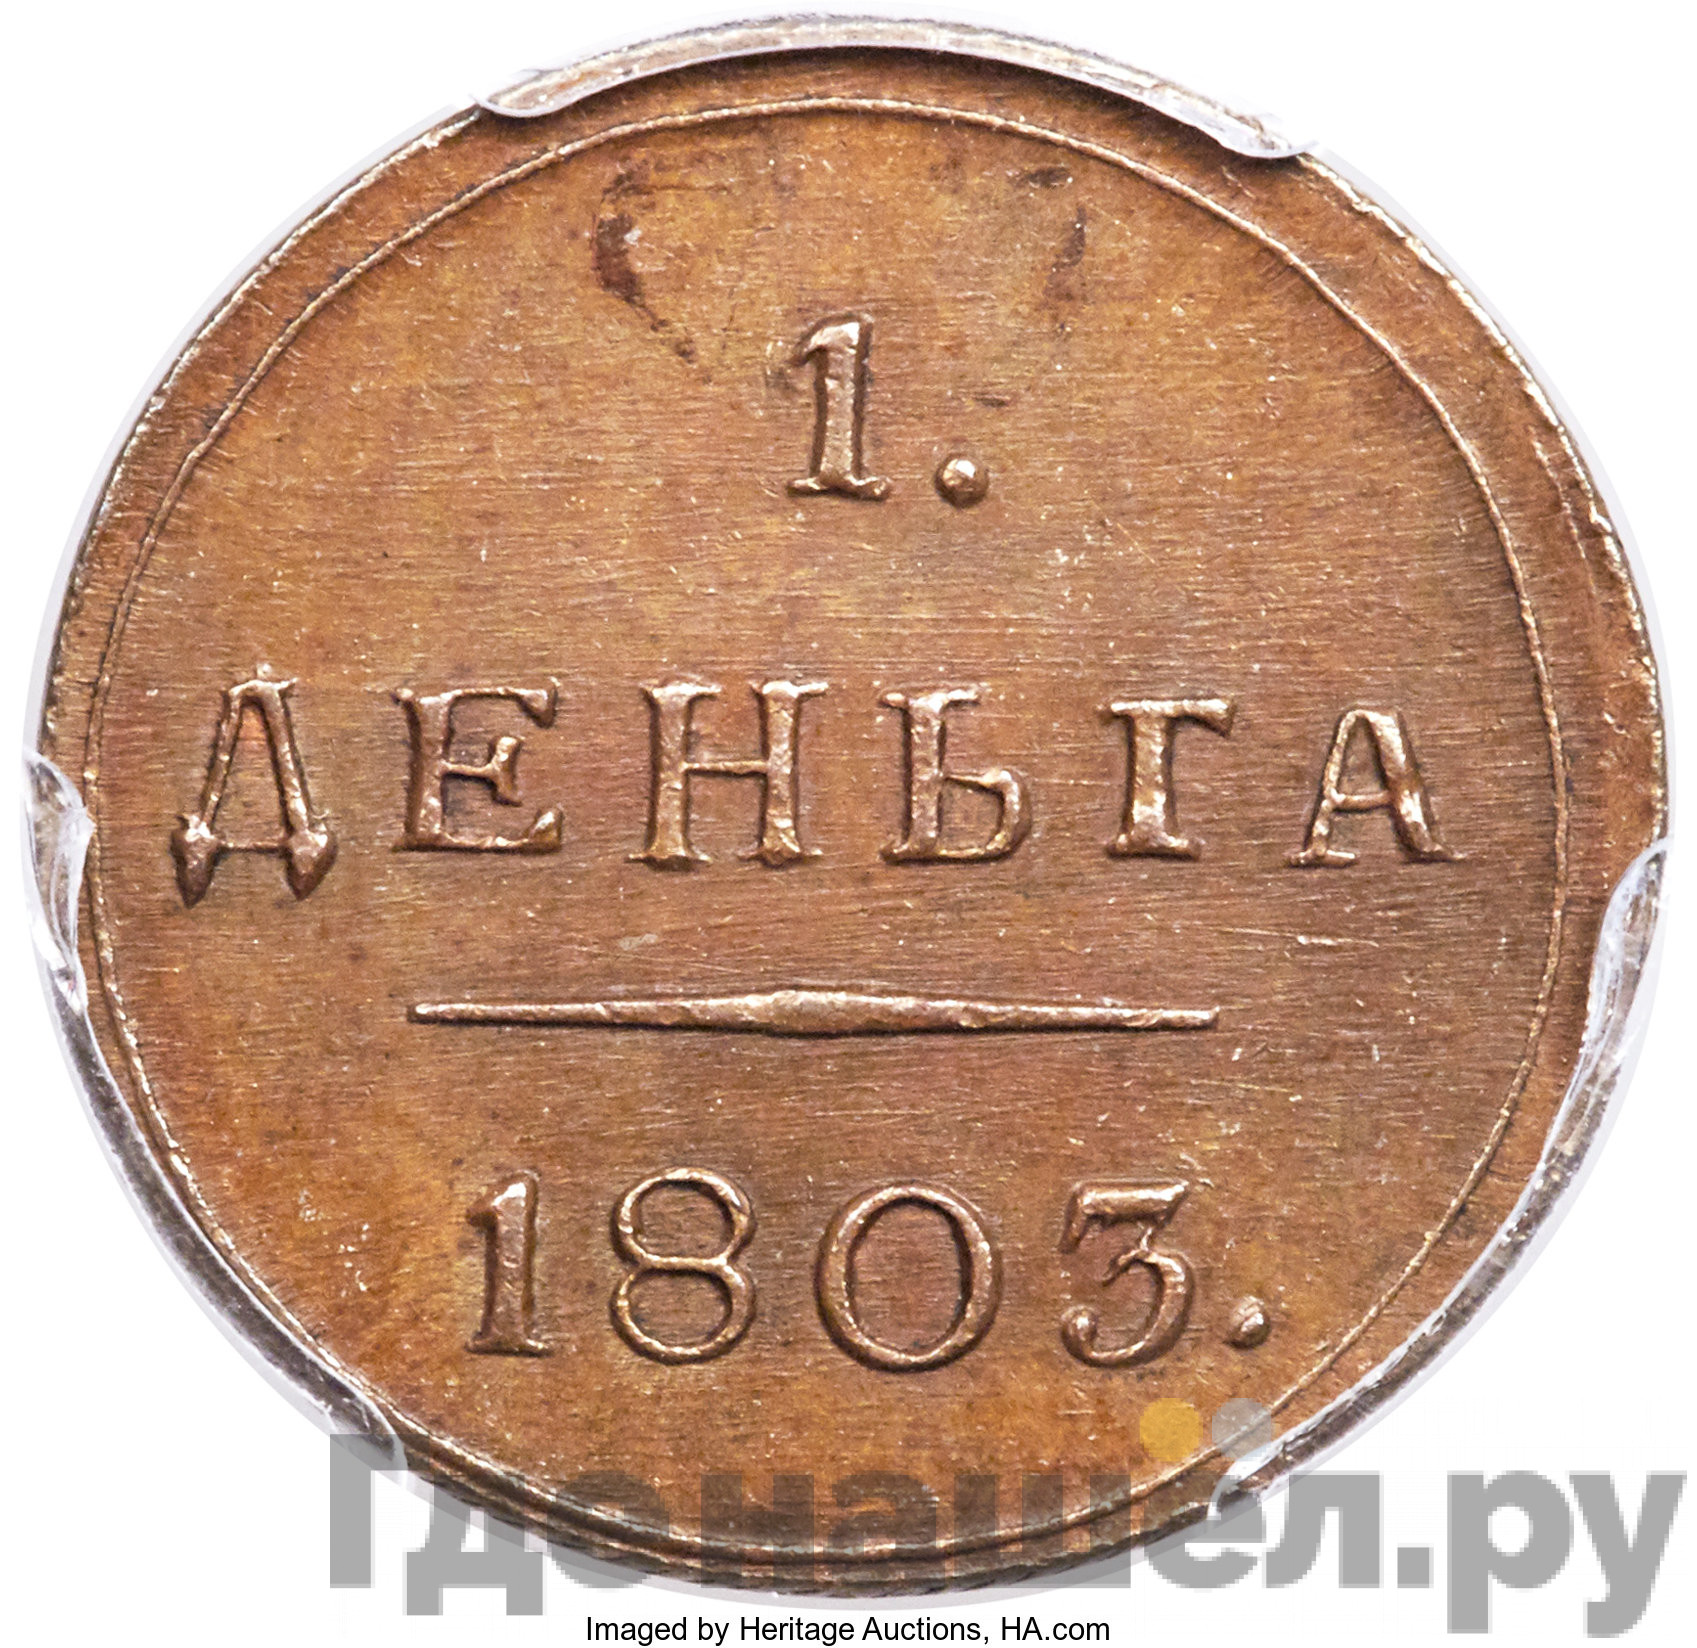 Деньга 1803 года КМ Кольцевая Новодел 